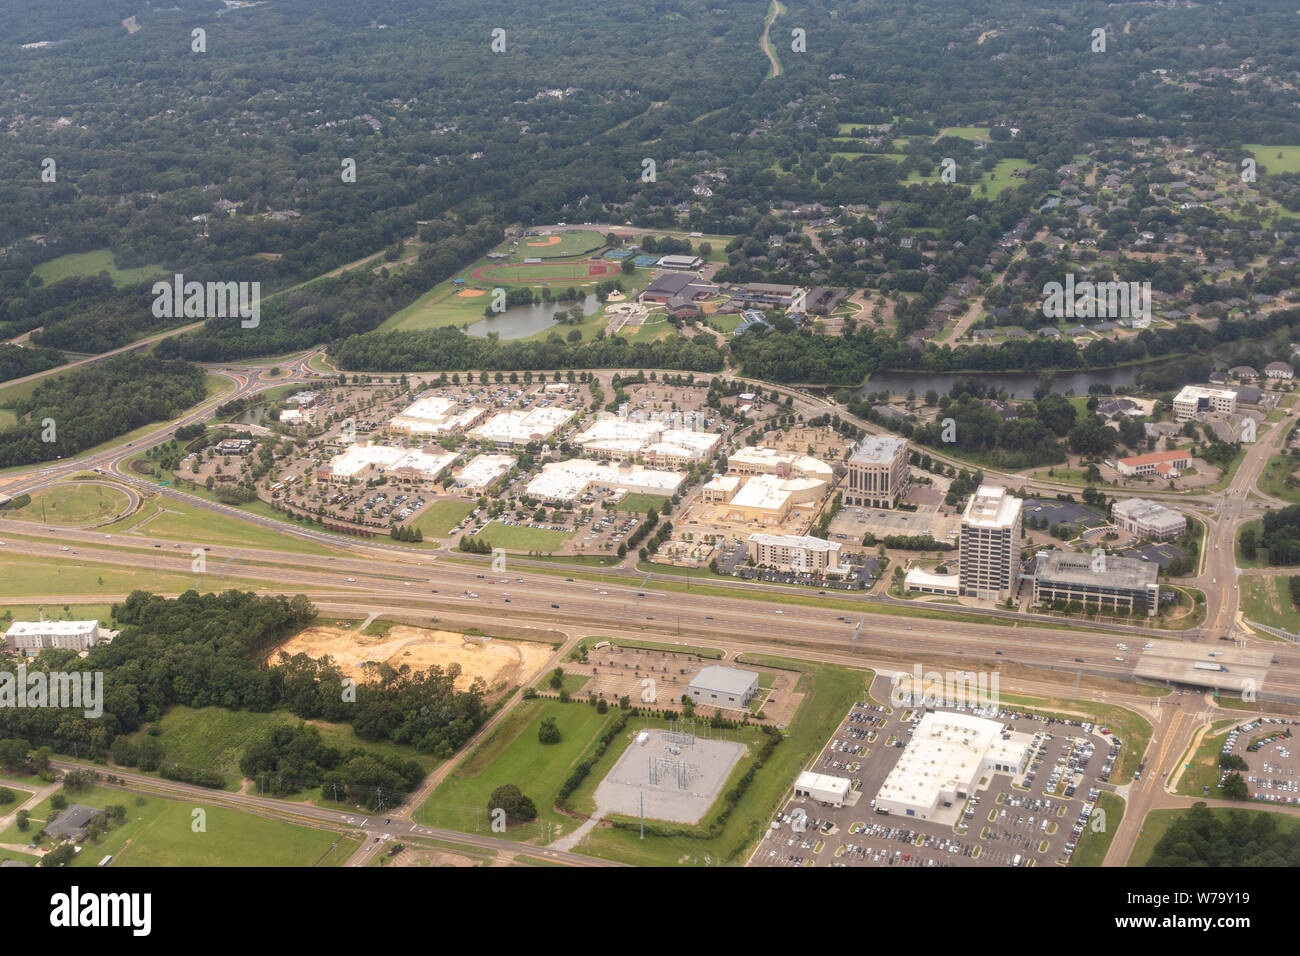 Ridgeland, MS / USA - Juillet 13, 2019 - vue aérienne de la Renaissance à Colony Park Shopping Centre à côté de la I-55 près de Jackson, MS Banque D'Images